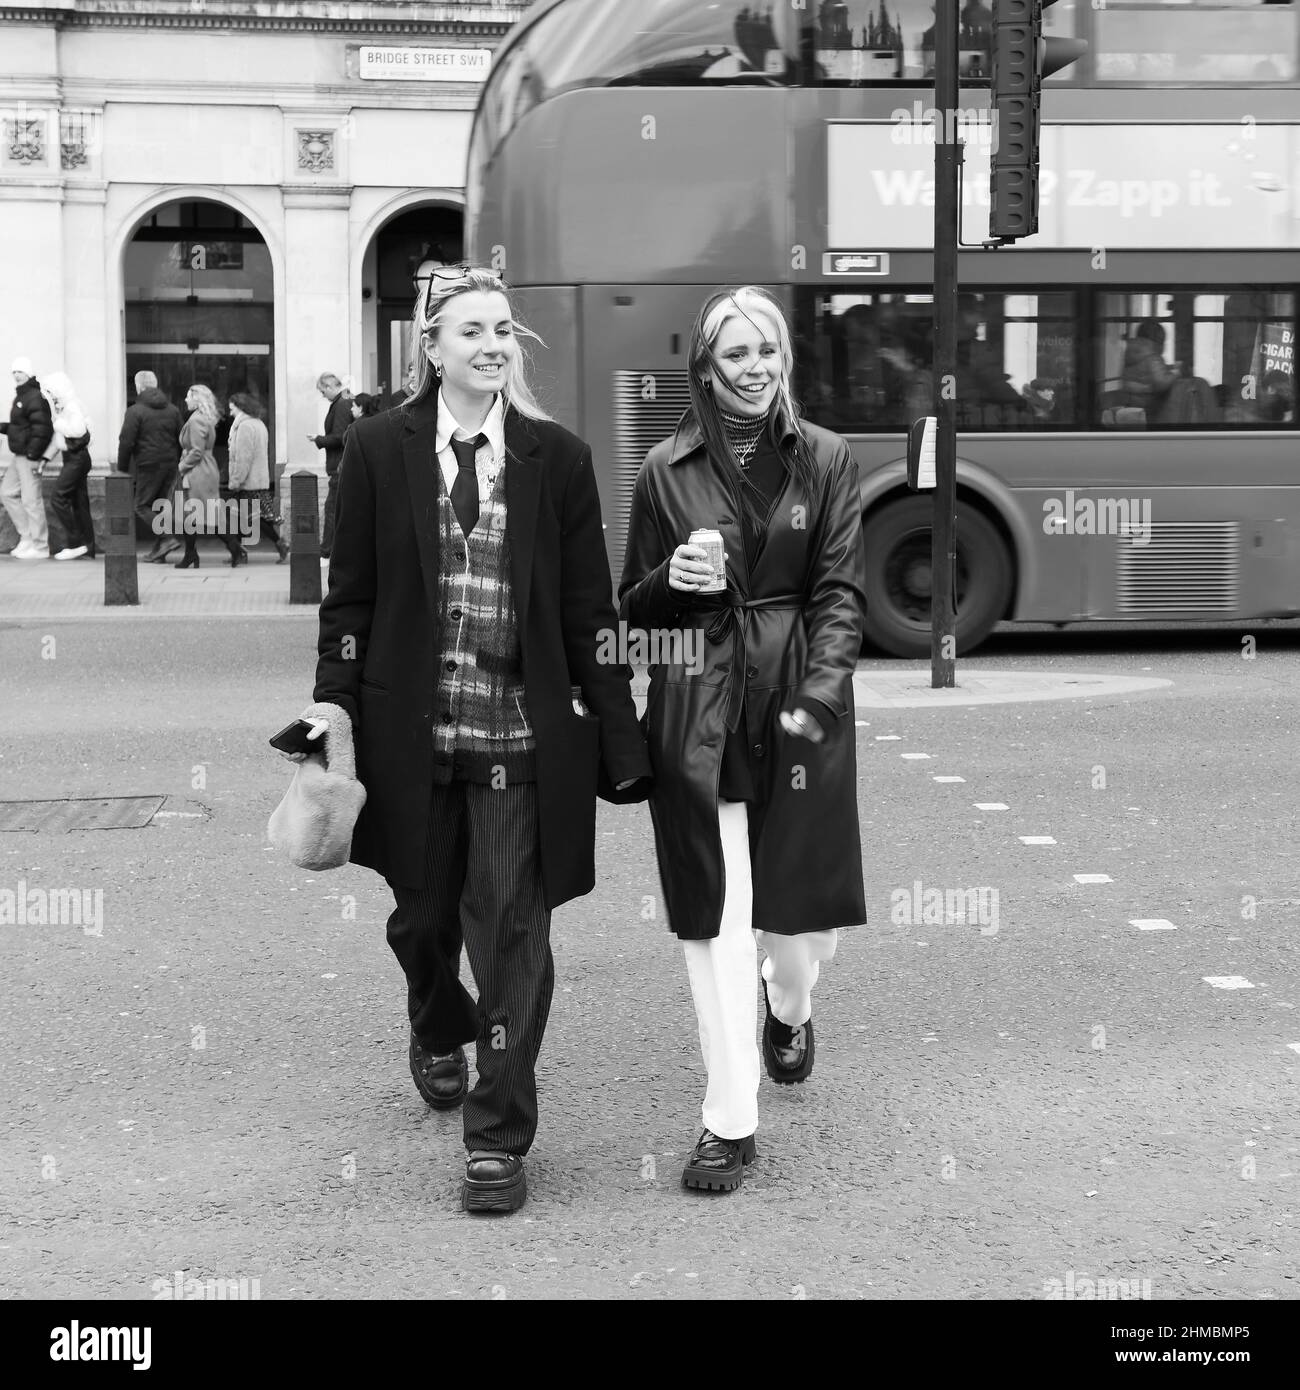 London, Greater London, England, Februar 05 2022: Zwei trendige Frauen, eine in einer Weste, lächeln und schmunzeln mit einem Bus über die Bridge Street Stockfoto